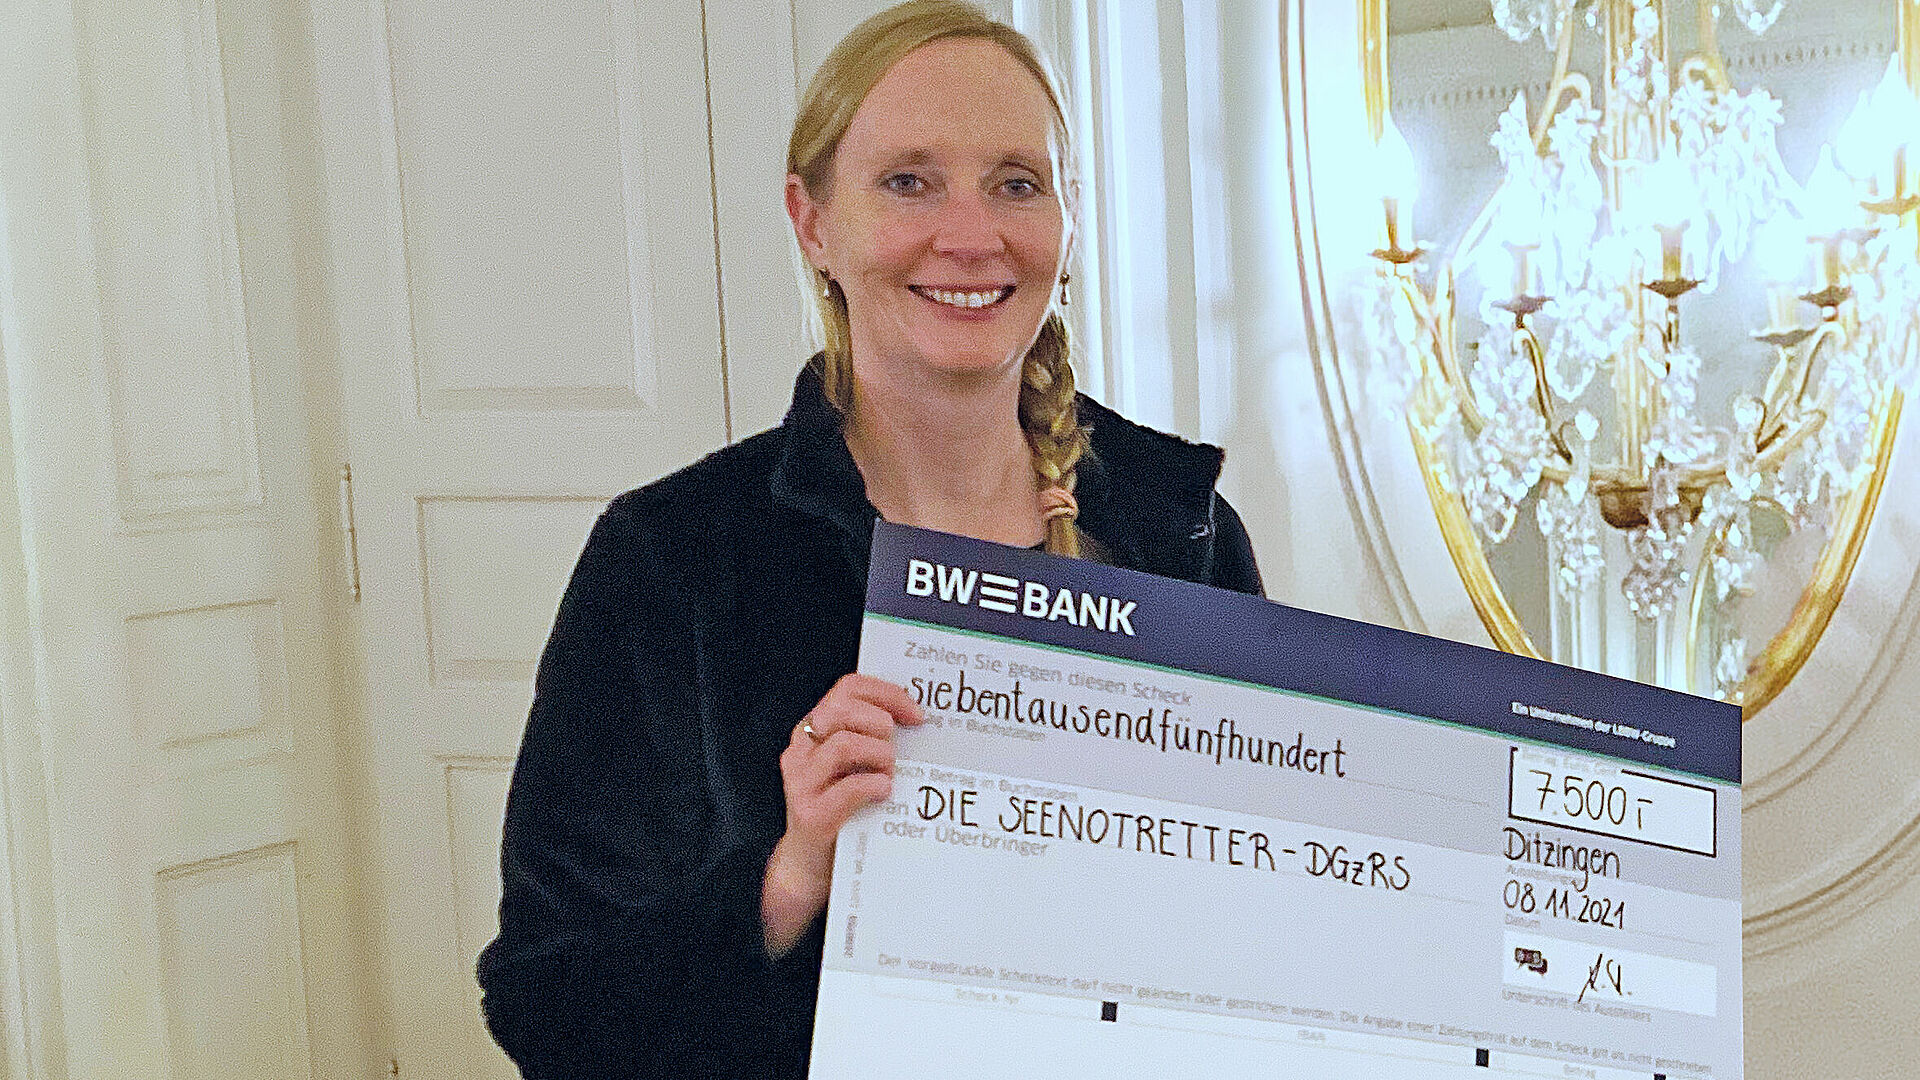 DGzRS-Mitarbeiterin Sabine Preiß mit dem symbolischen Spendenscheck über 7.500 Euro für die a+s DialogGroup GmbH